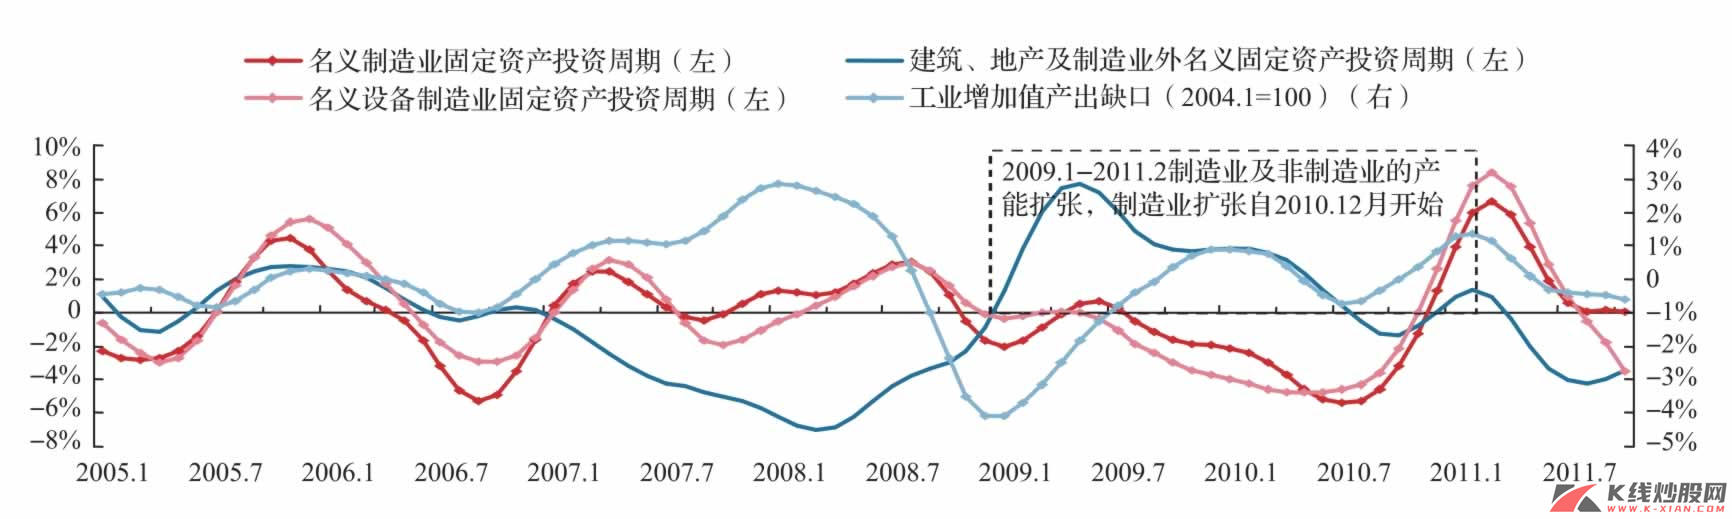 中国资本性支出周期：制造业及非制造业的扩张